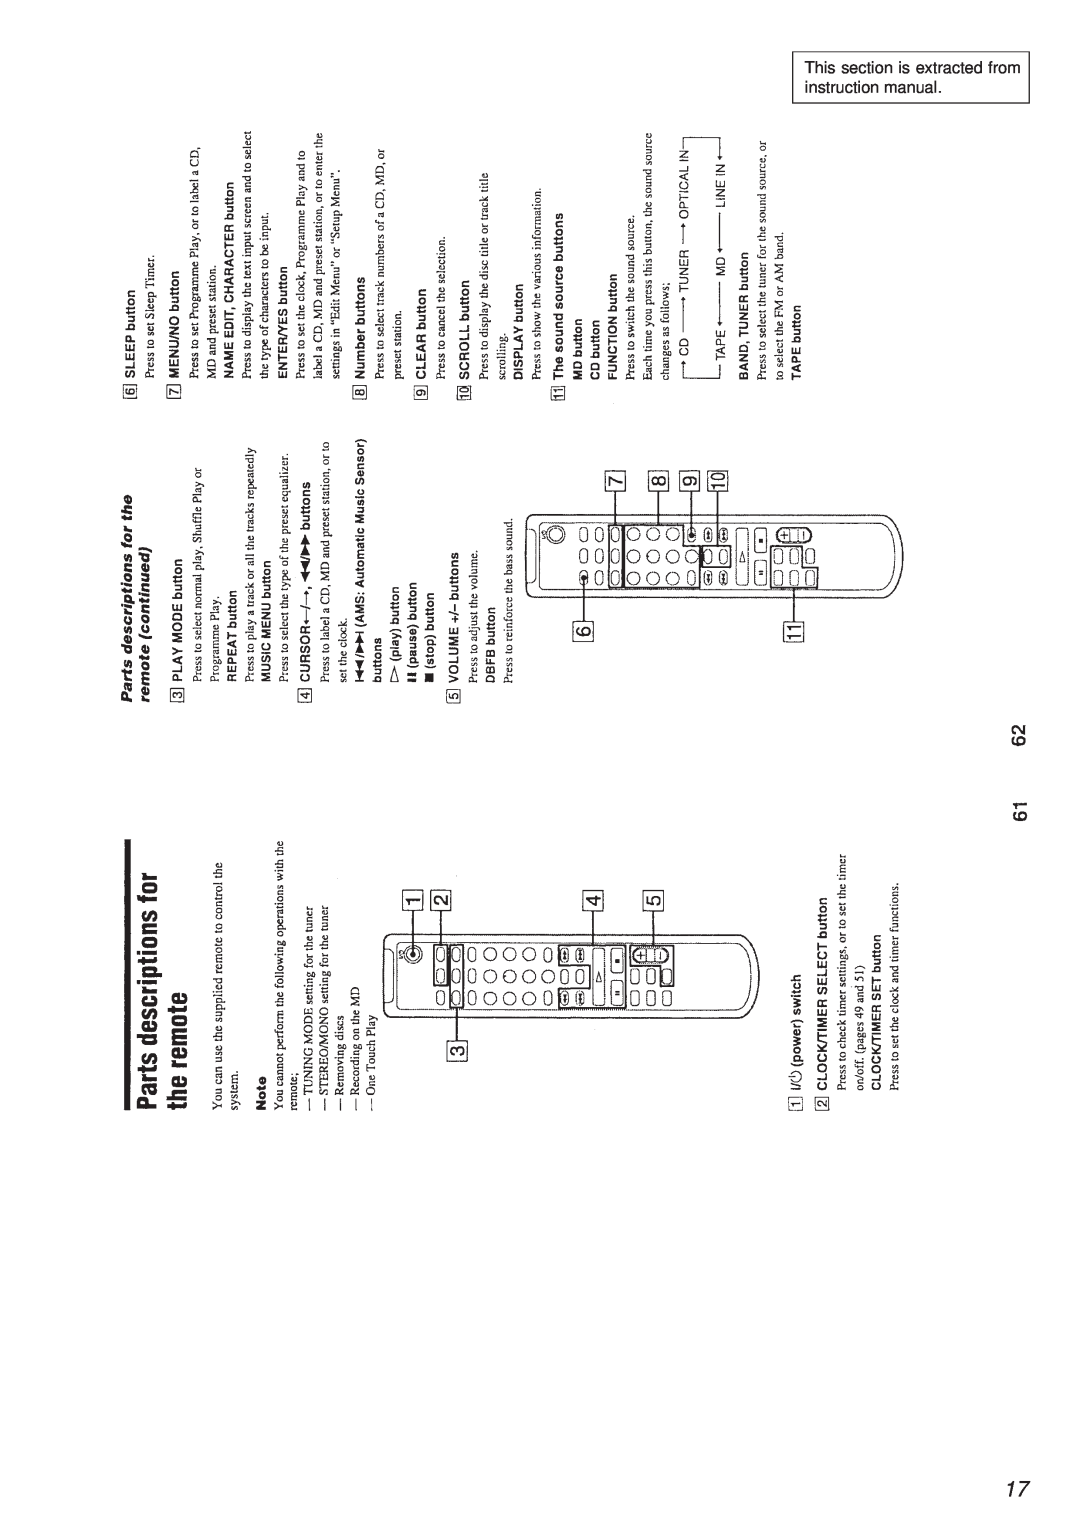 Sony HCD-MD373 service manual 